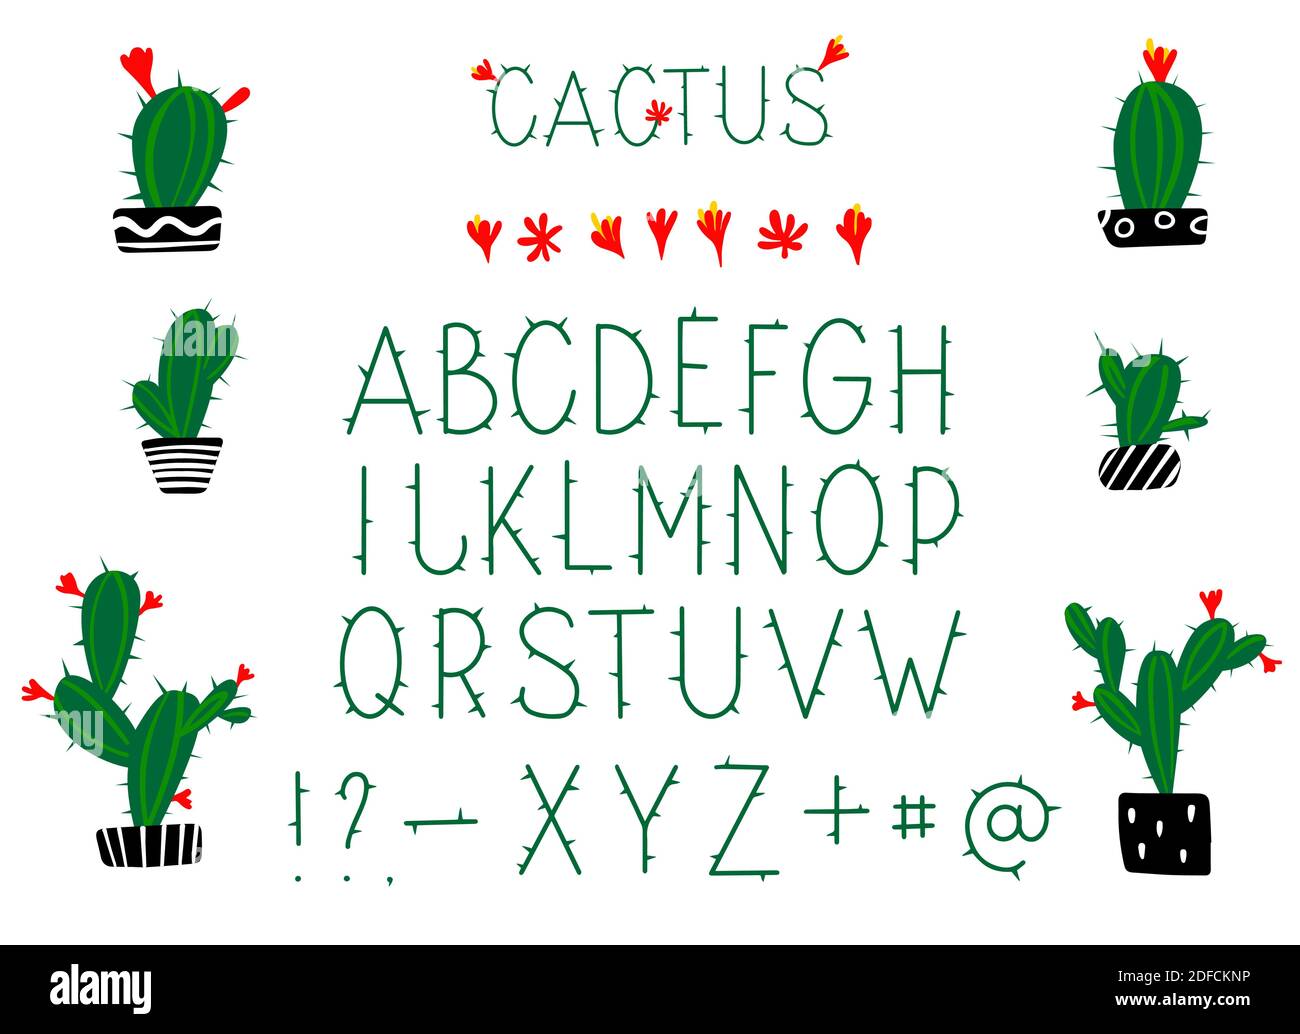 Alfabeto latino verde cactus prickly con fiori in fiore. Lettere in inglese. Disegno a mano isolato su sfondo bianco illustrazione vettoriale Illustrazione Vettoriale